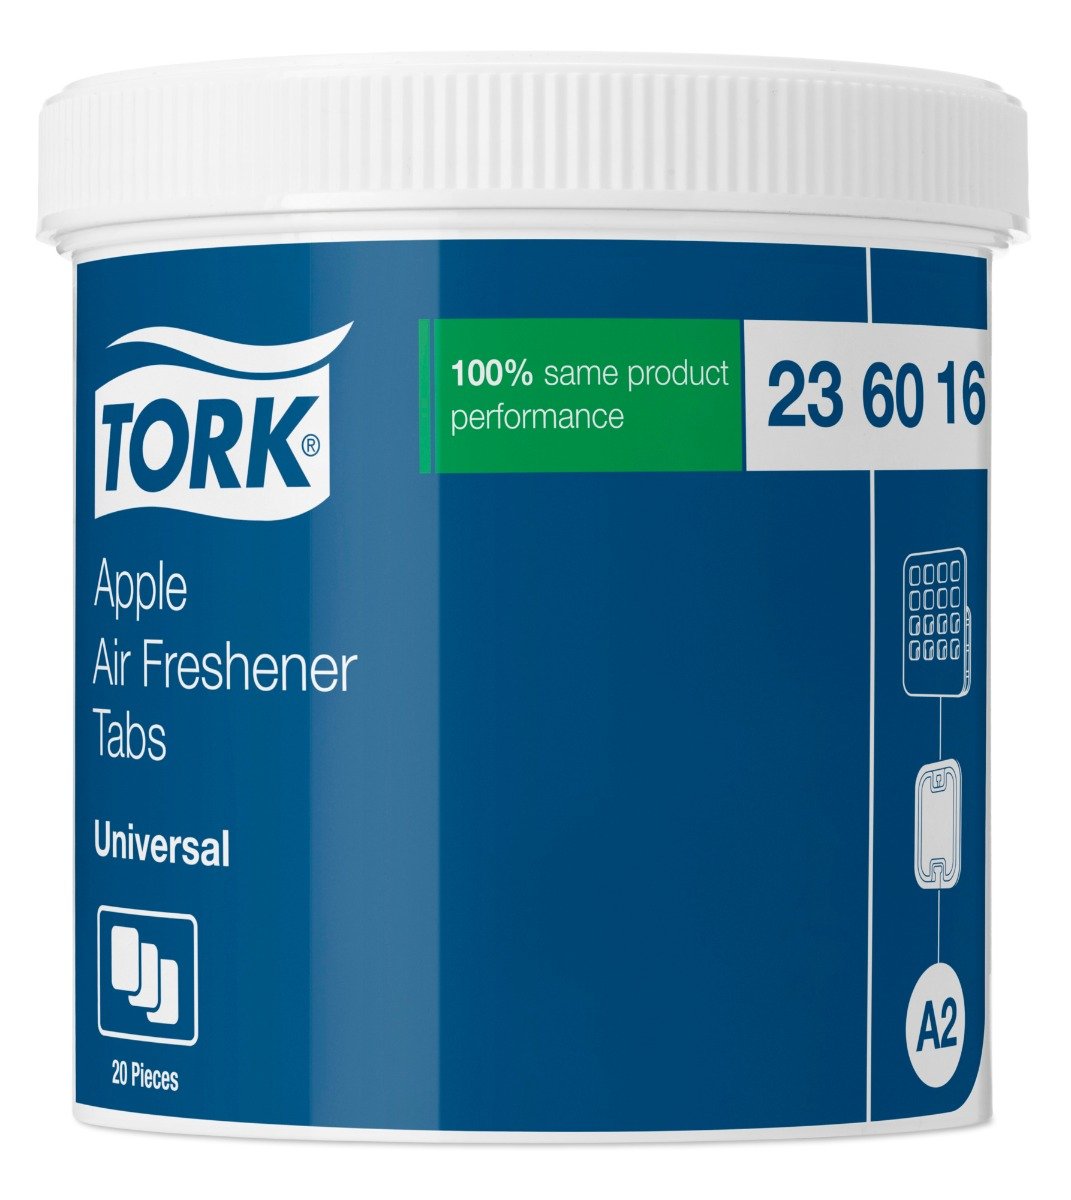 Billede af Tork æble duftfrisker disc, til A2 dispenser, 20 stk.